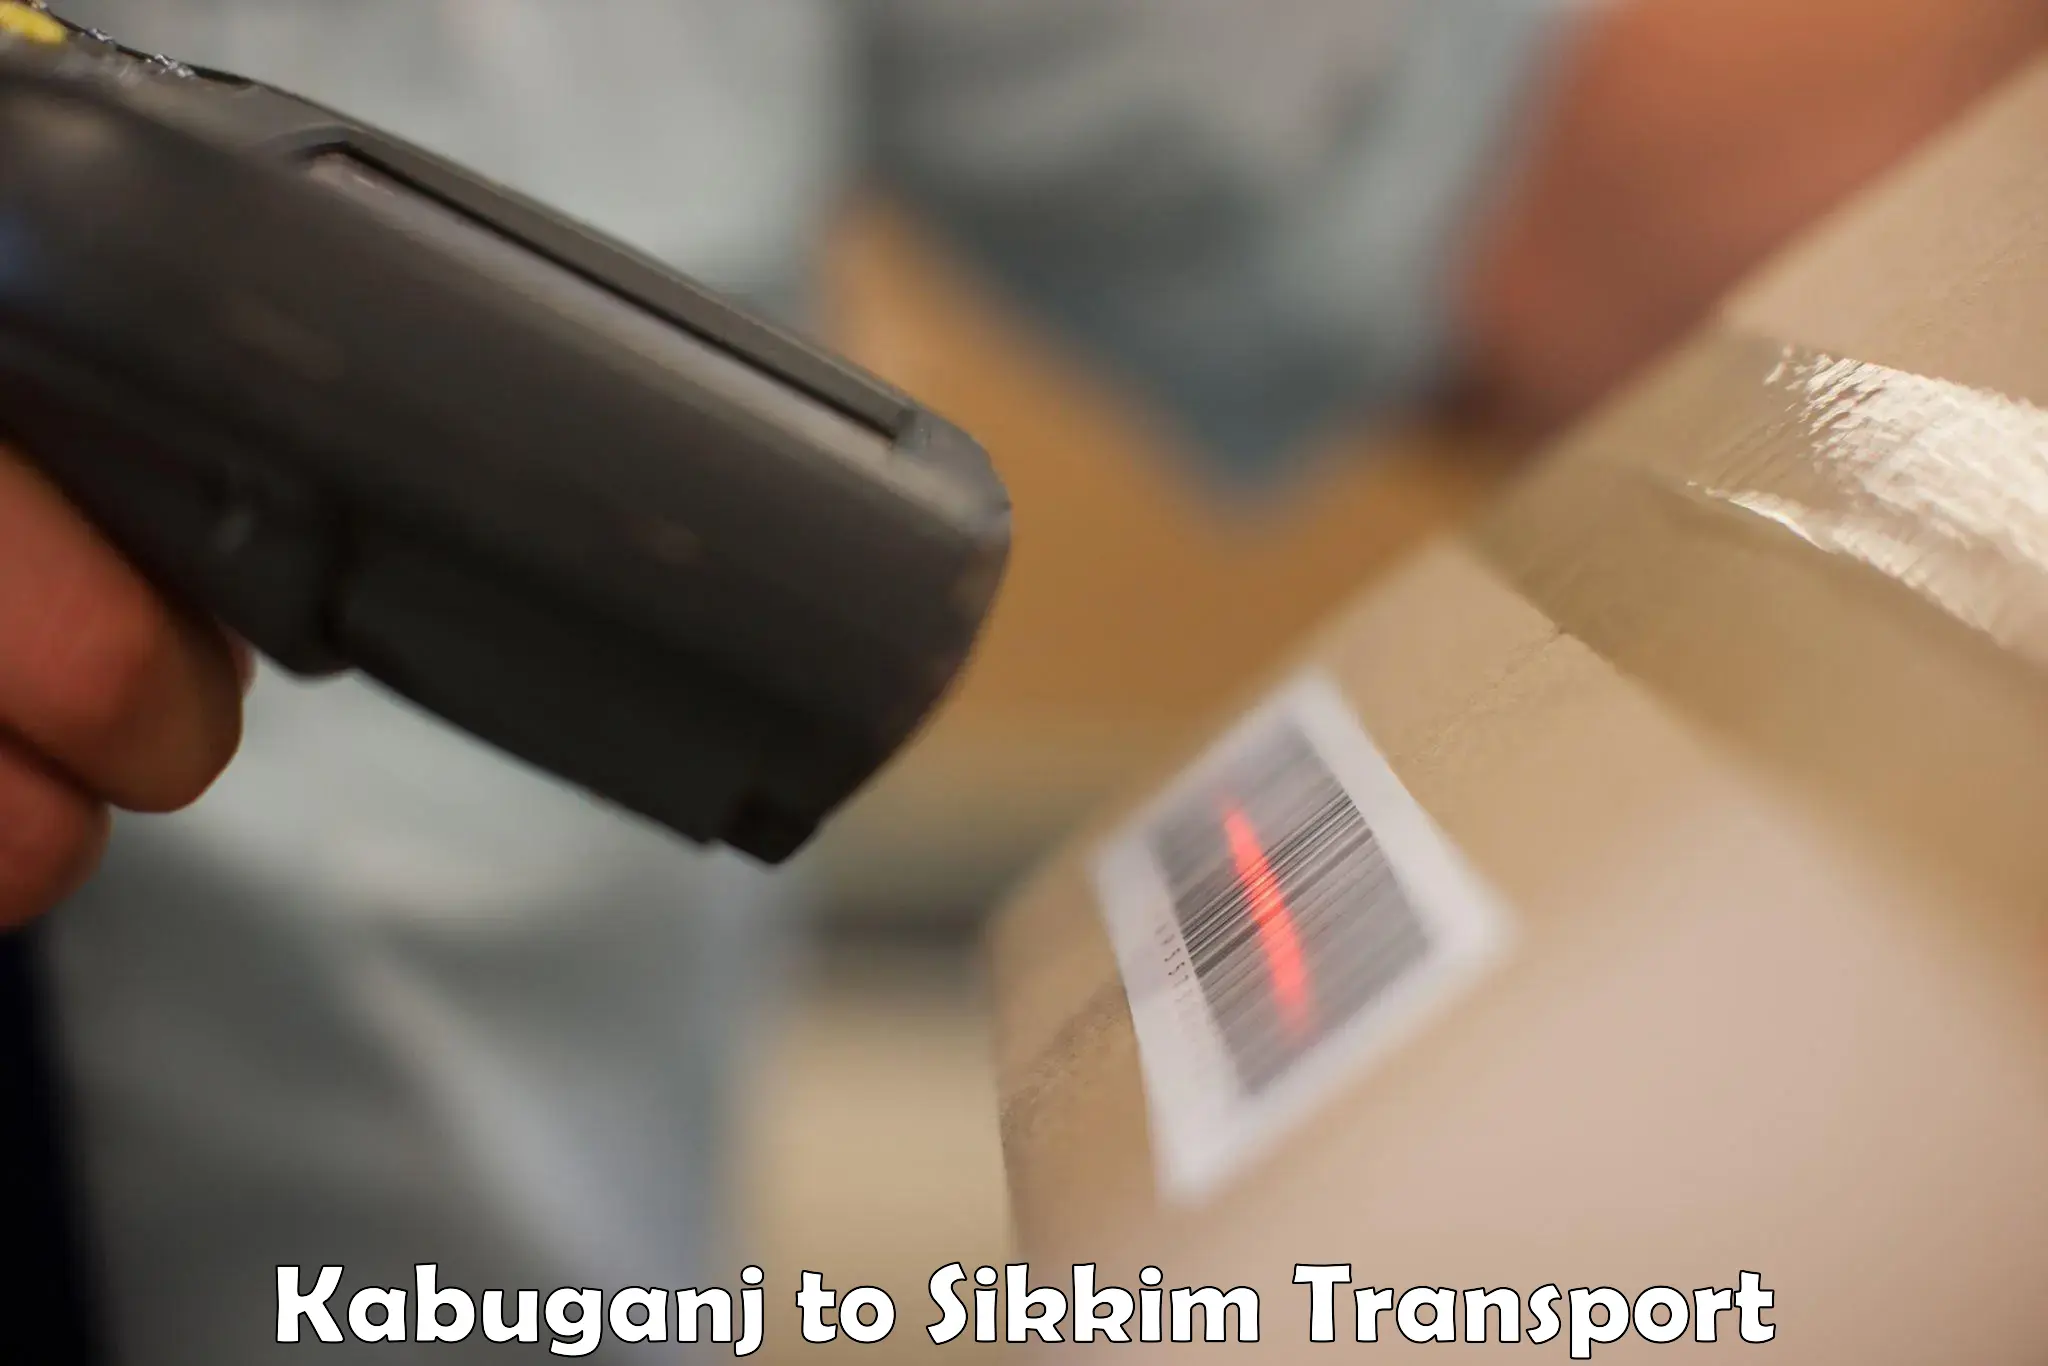 Luggage transport services Kabuganj to Mangan